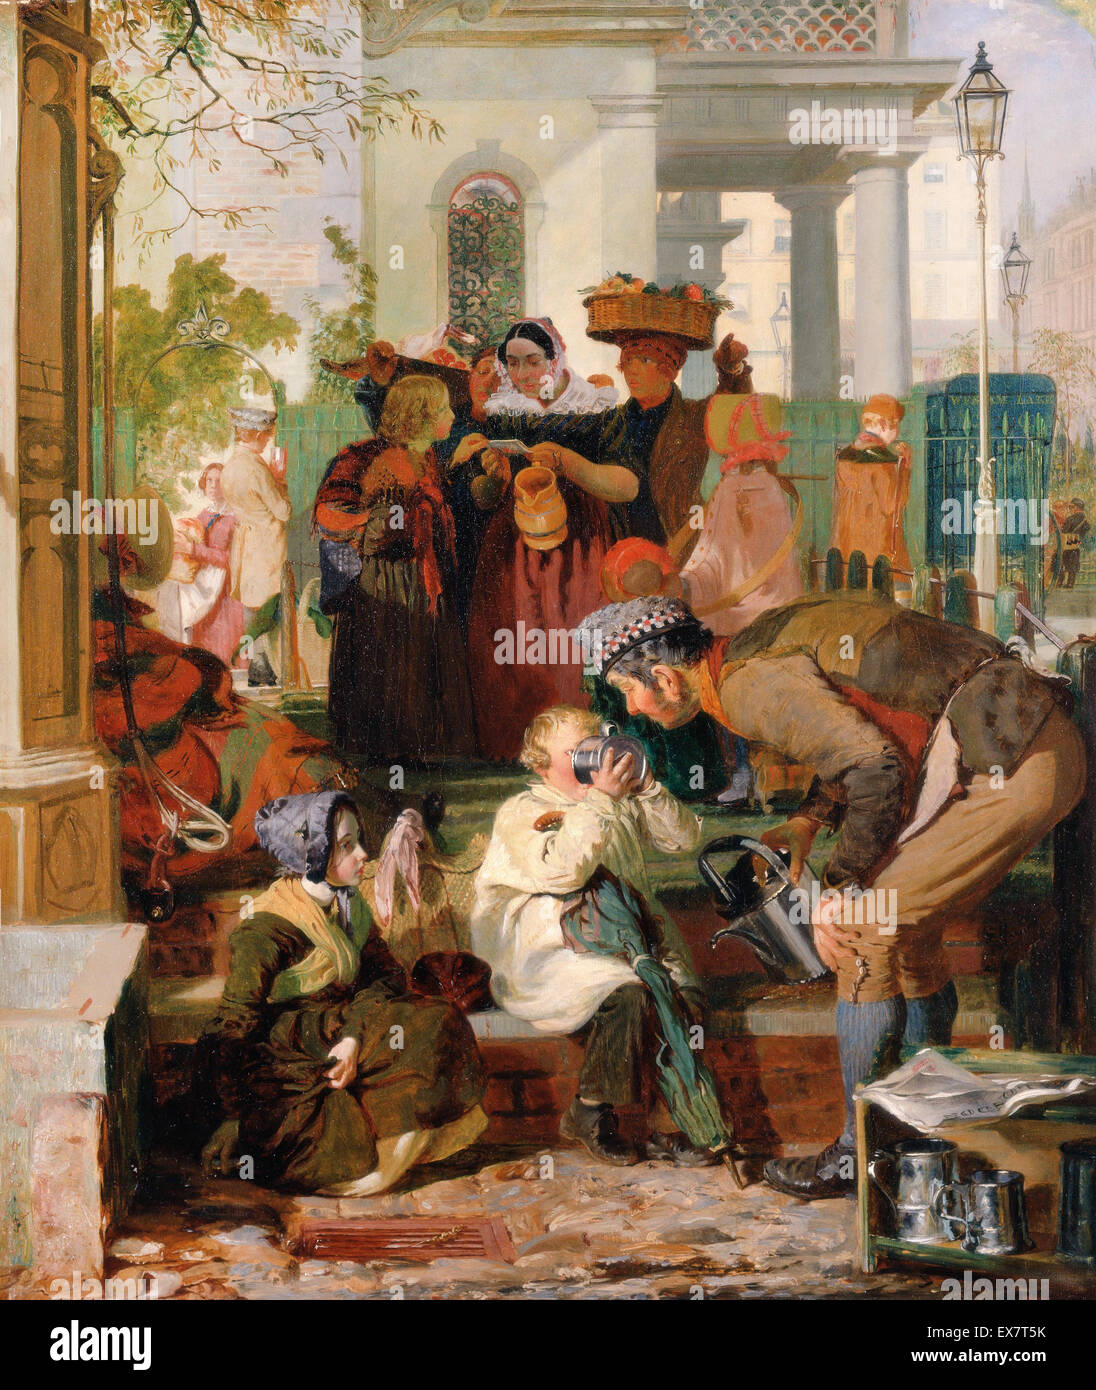 Robert Hannah, erfrischend die müden. Ca. 1847. Öl auf Leinwand. Yale Center for British Art, New Haven, USA. Stockfoto